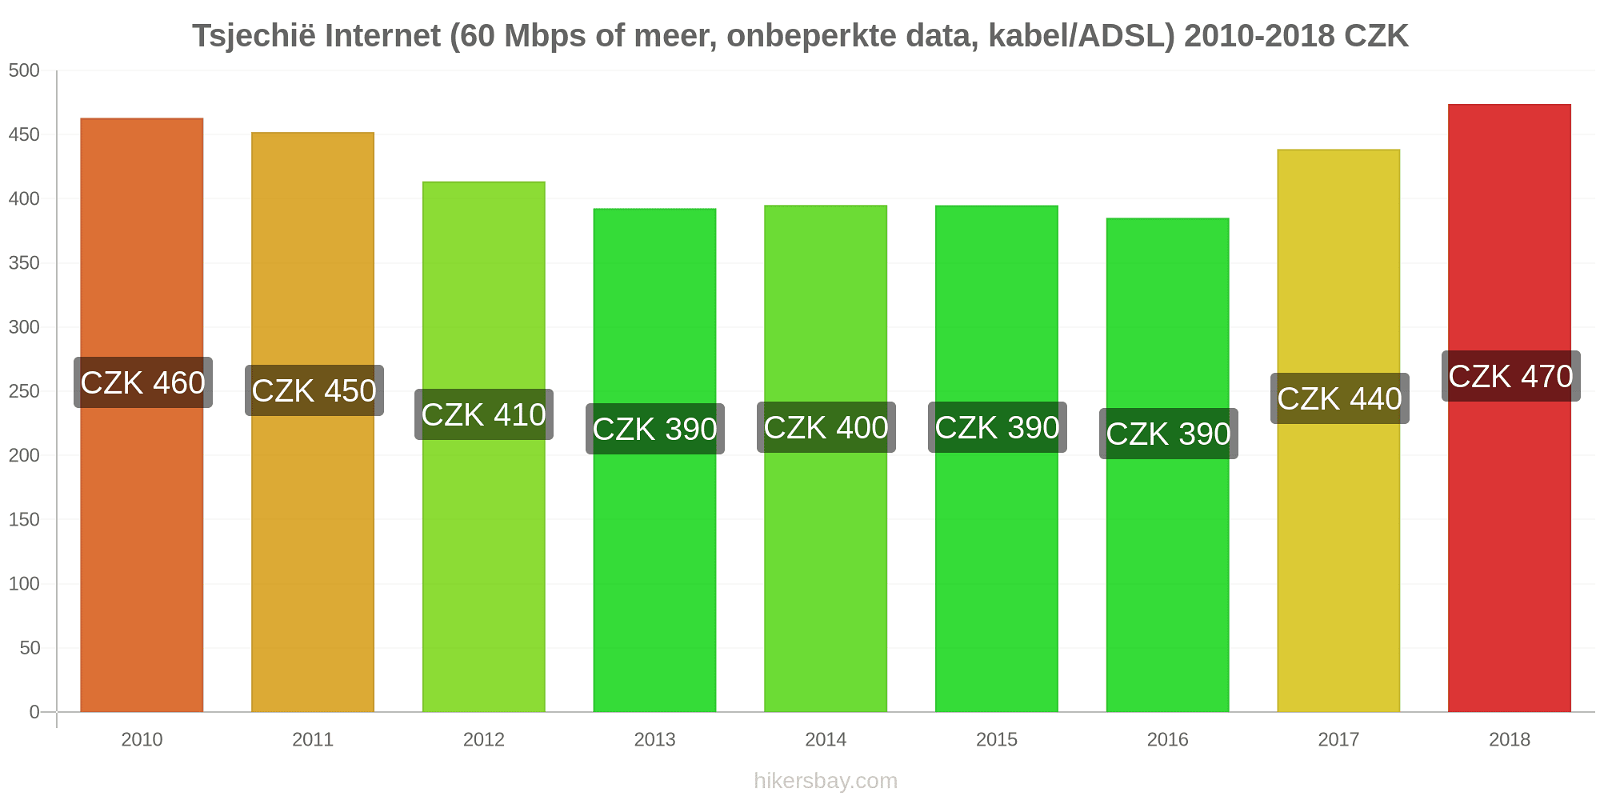 Tsjechië prijswijzigingen Internet (60 Mbps of meer, Onbeperkte Data, Kabel/ADSL) hikersbay.com